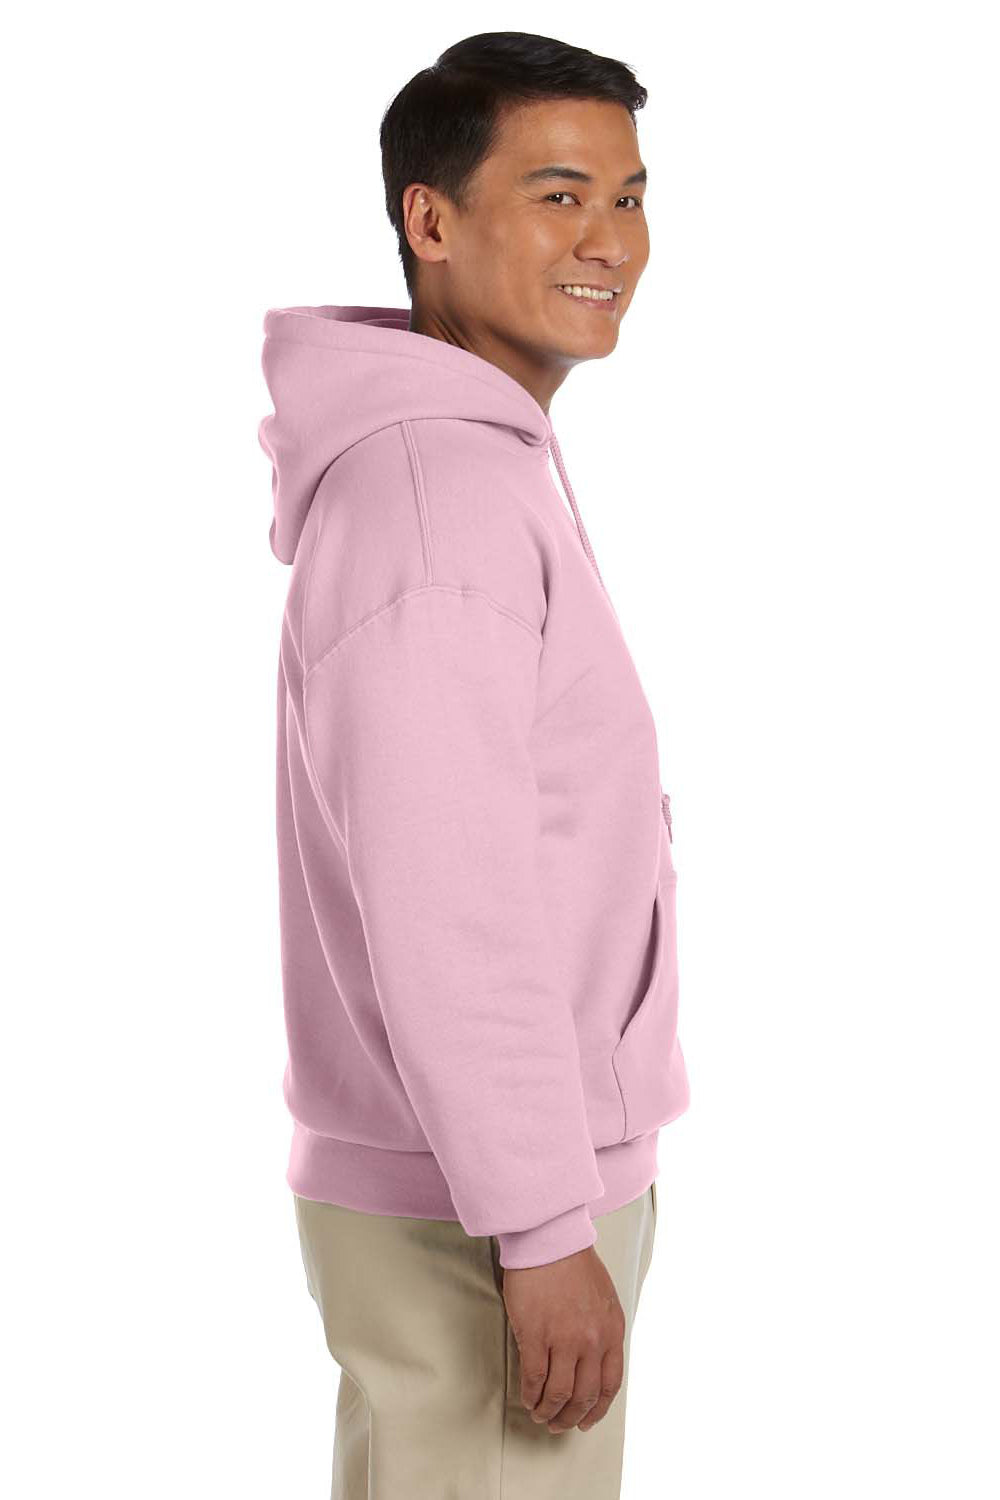 Gildan G185 Mens Hooded Sweatshirt Hoodie Light Pink Side